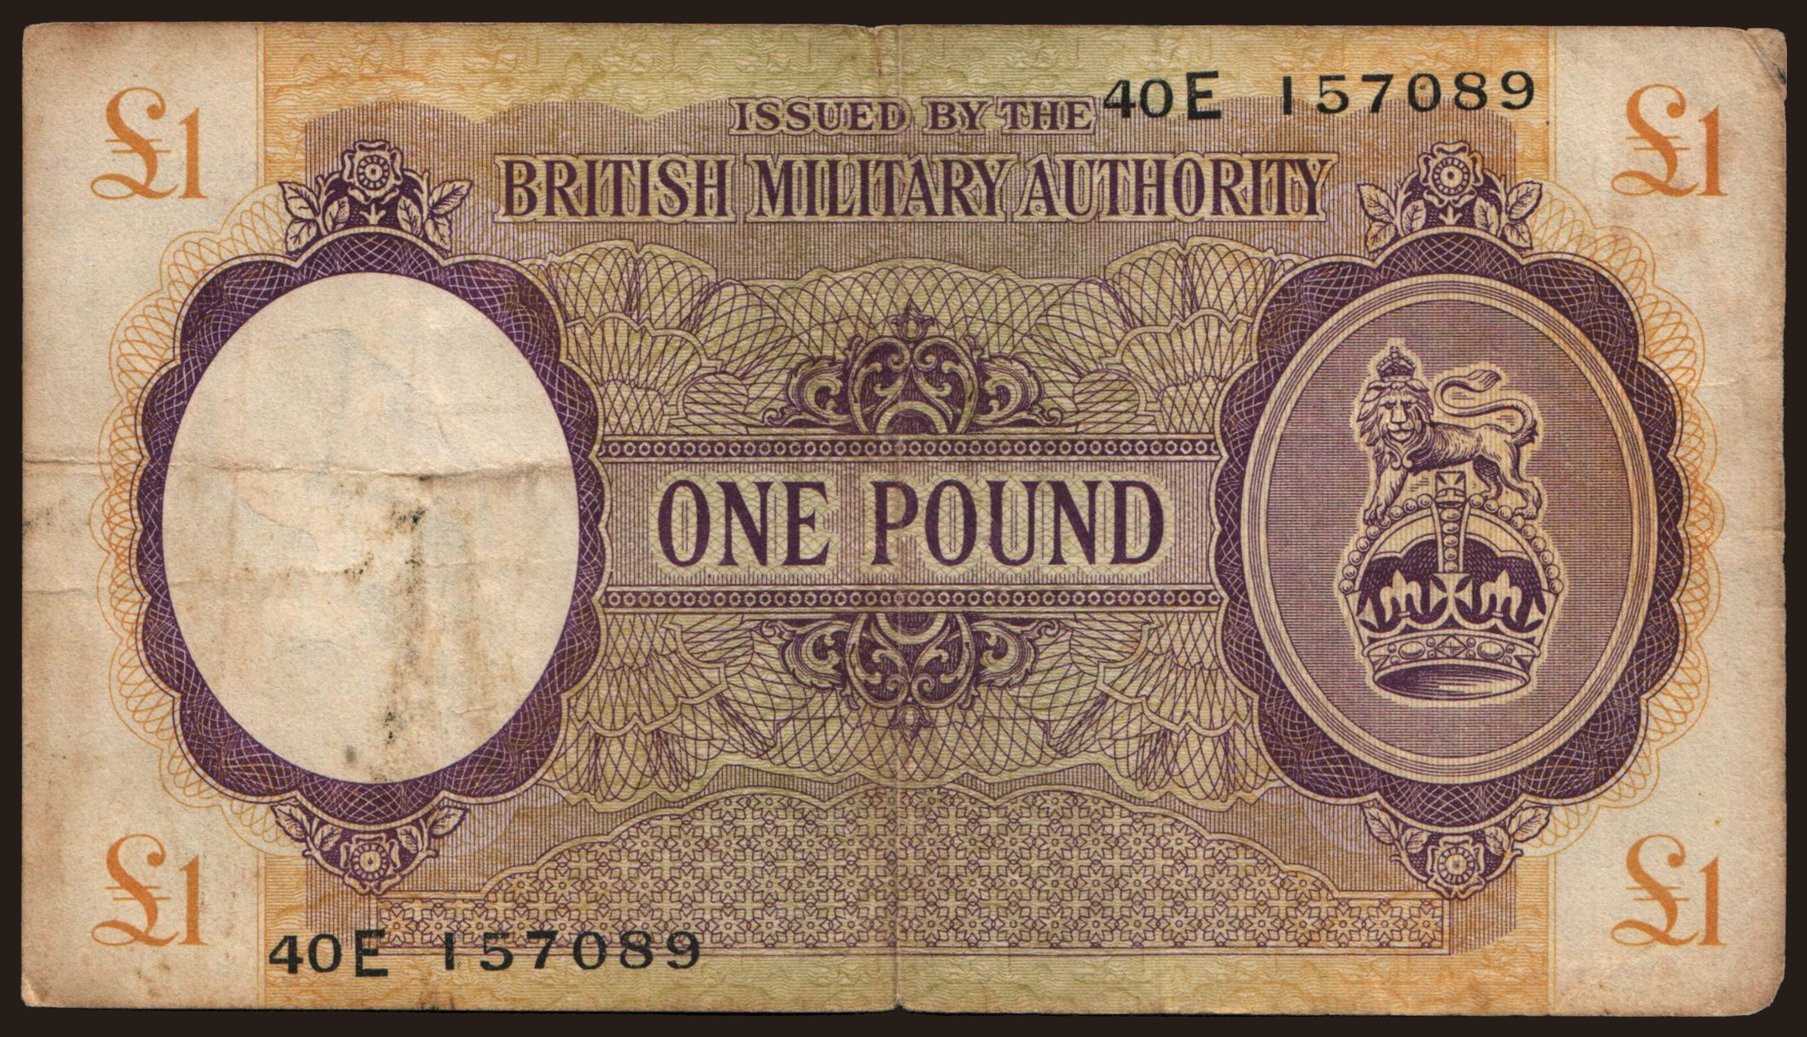 BMA, 1 pound, 1943